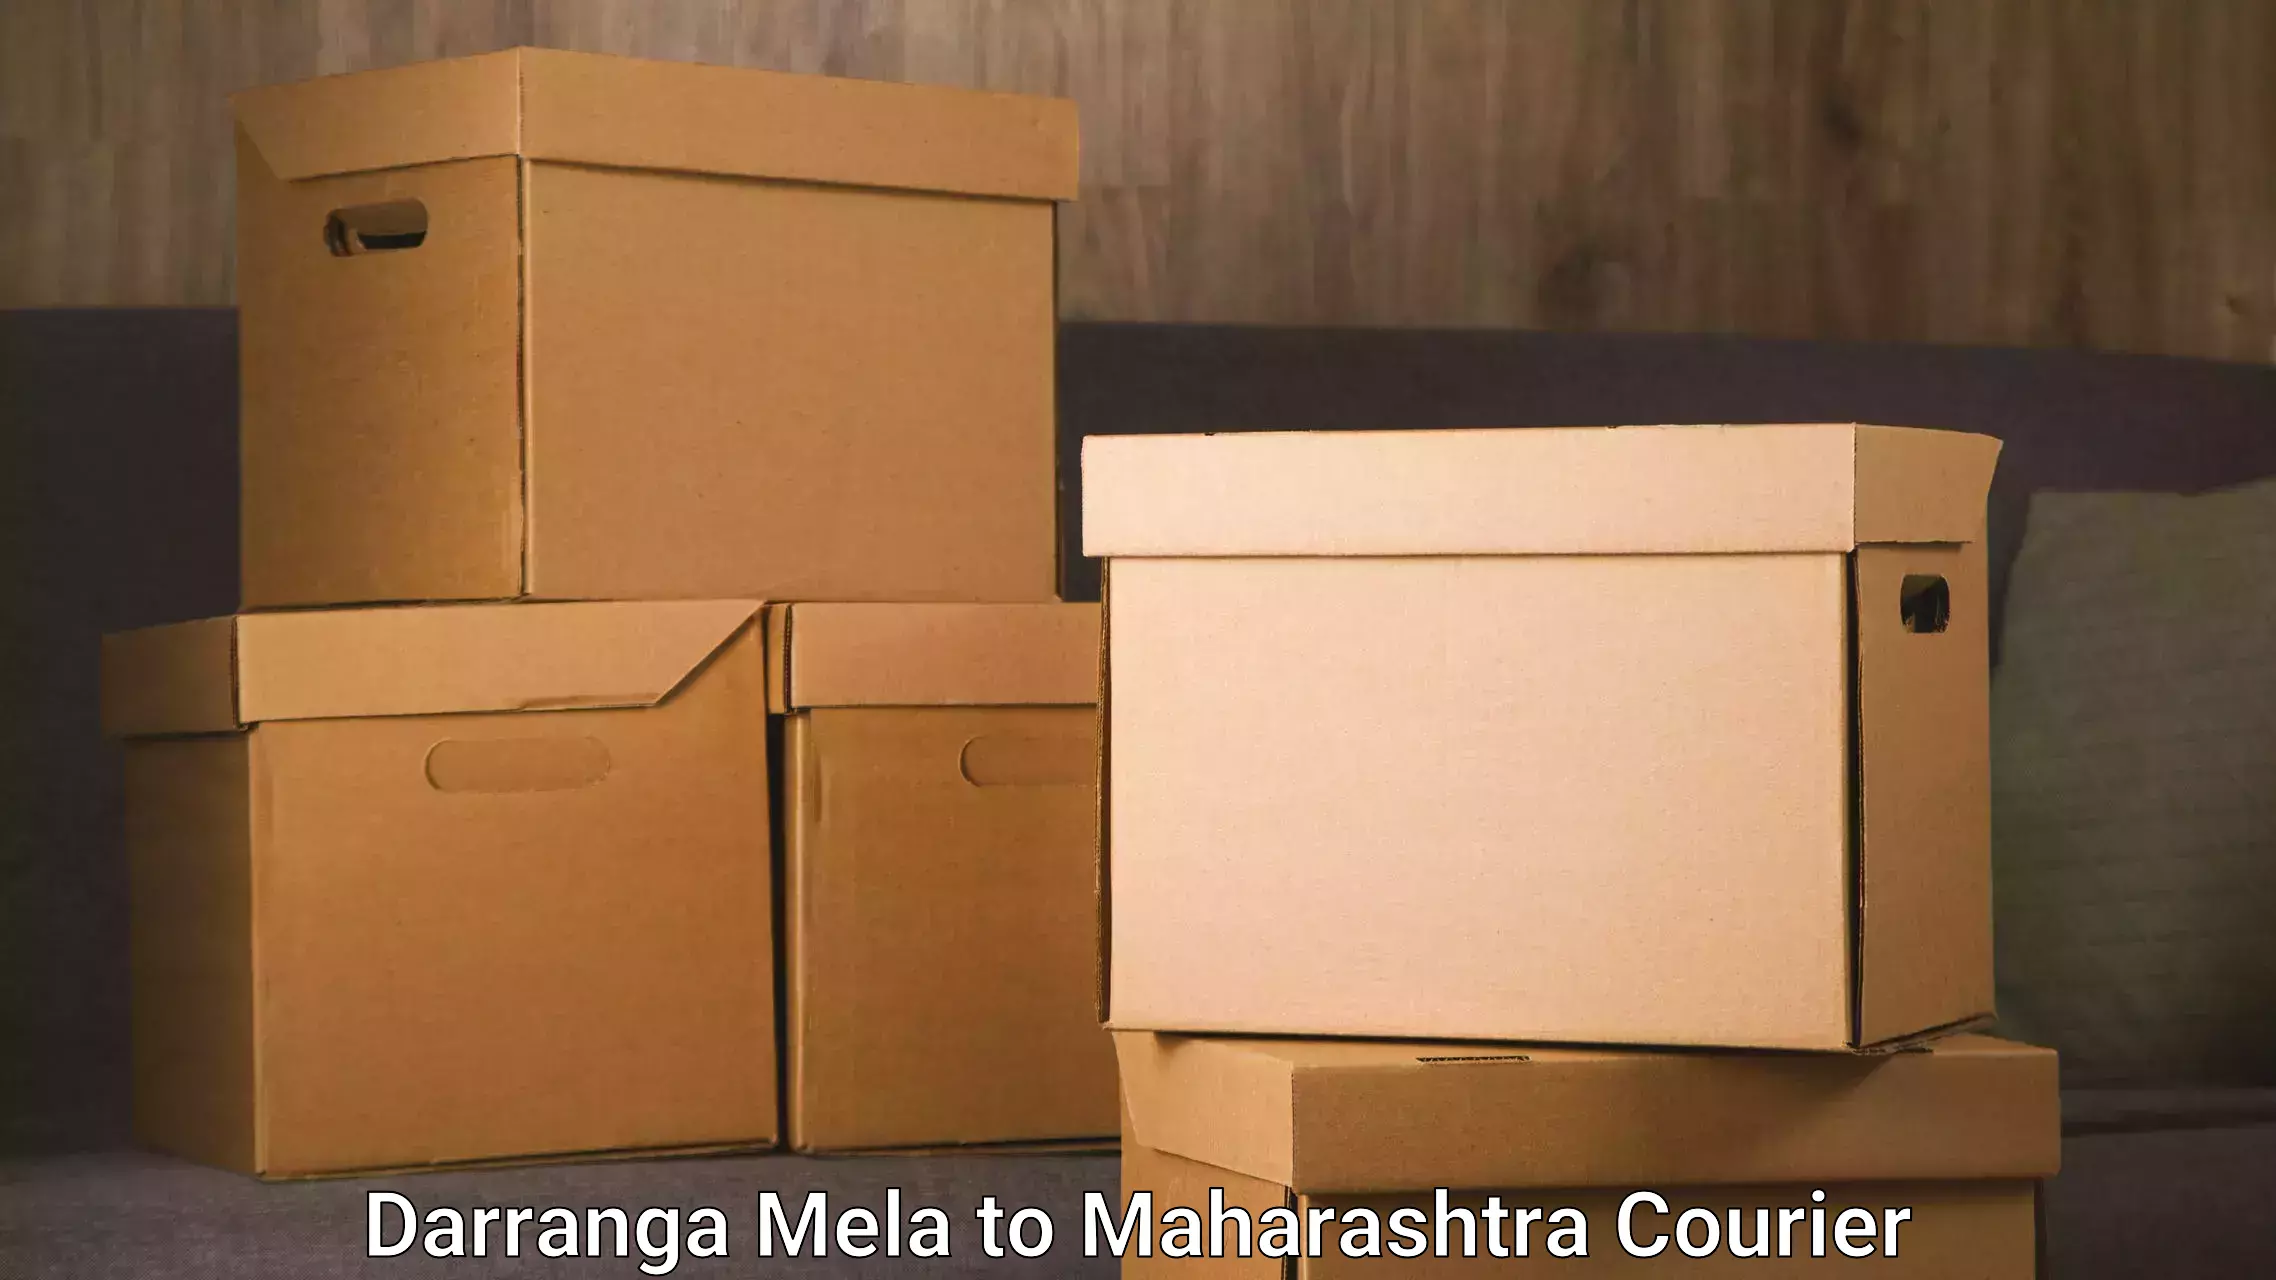 Speedy delivery service Darranga Mela to Maharashtra